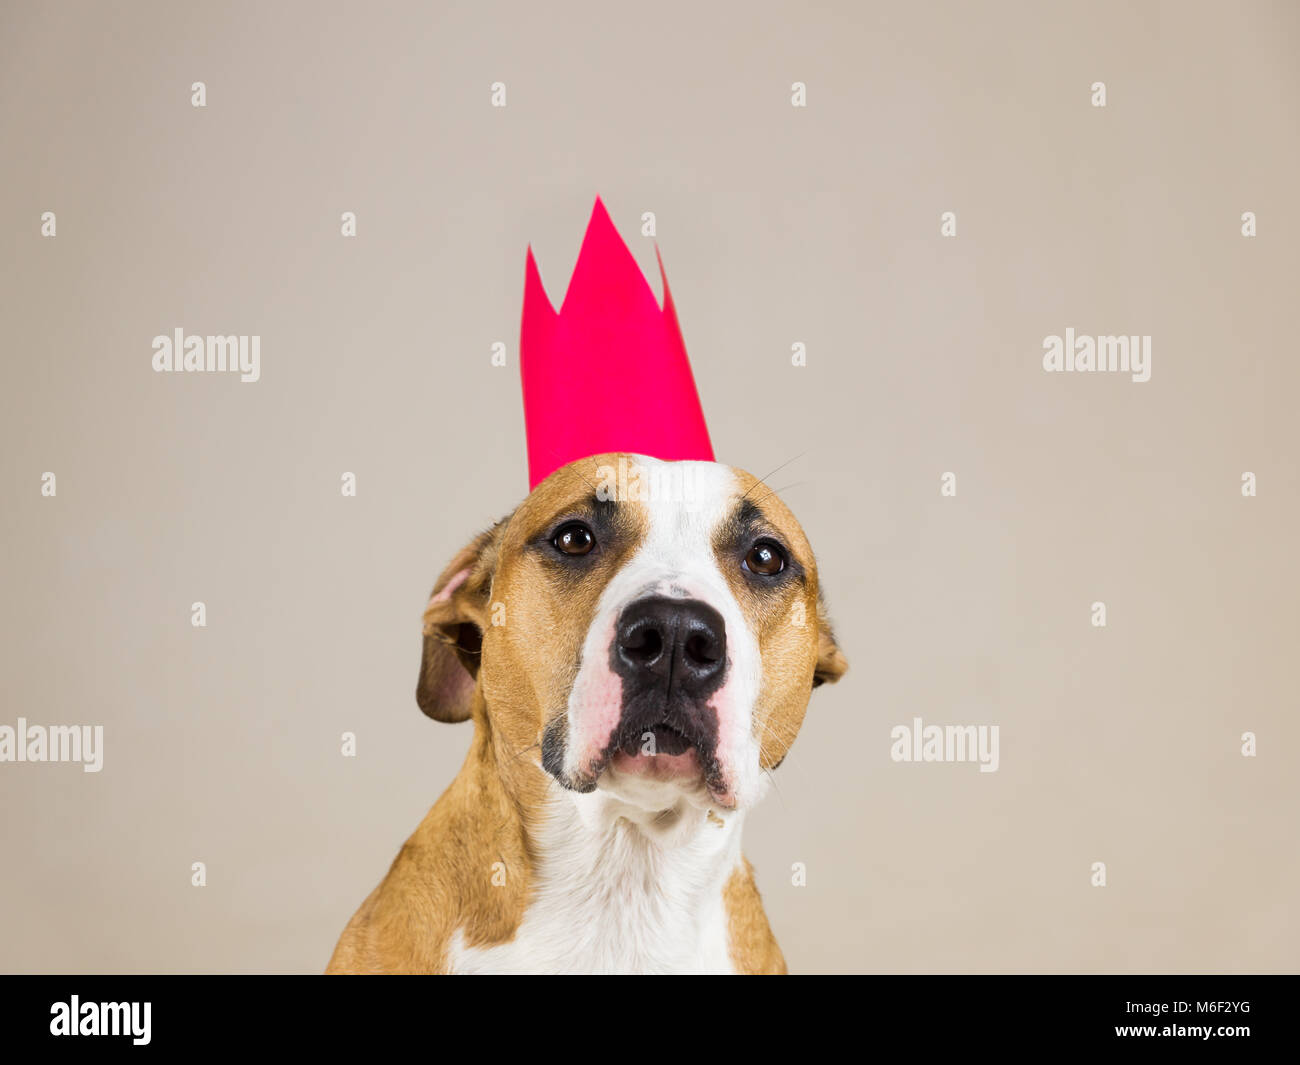 Staffordshire terrier sérieux et drôle avec couronne papier posant dans l'arrière-plan minimaliste. Studio shot of young pitbull habillé pour la famille à l'intérieur Banque D'Images